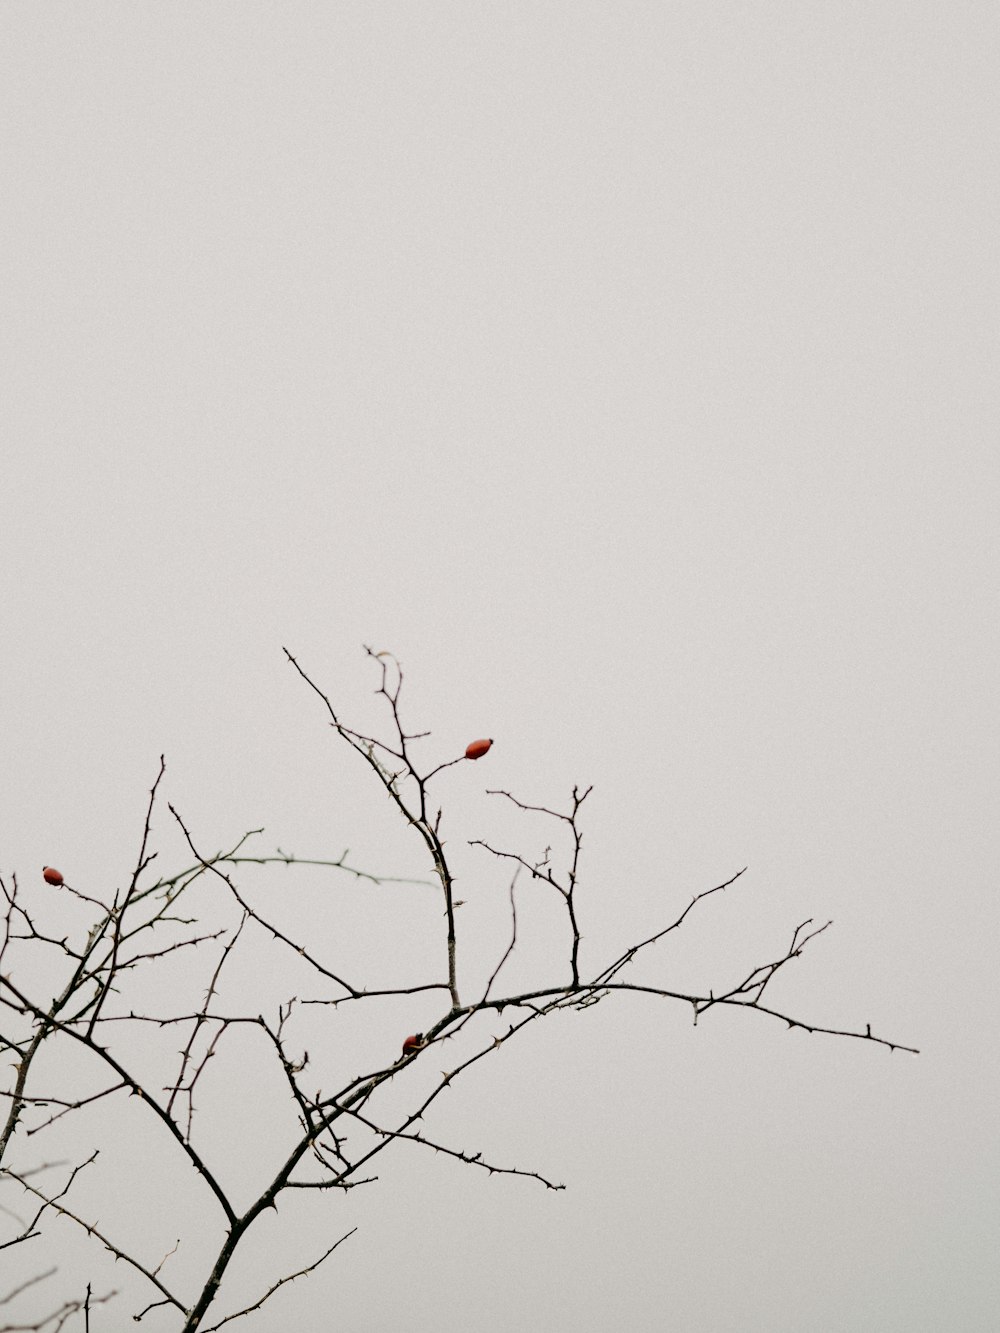 茶色の木の枝にとまった赤い鳥